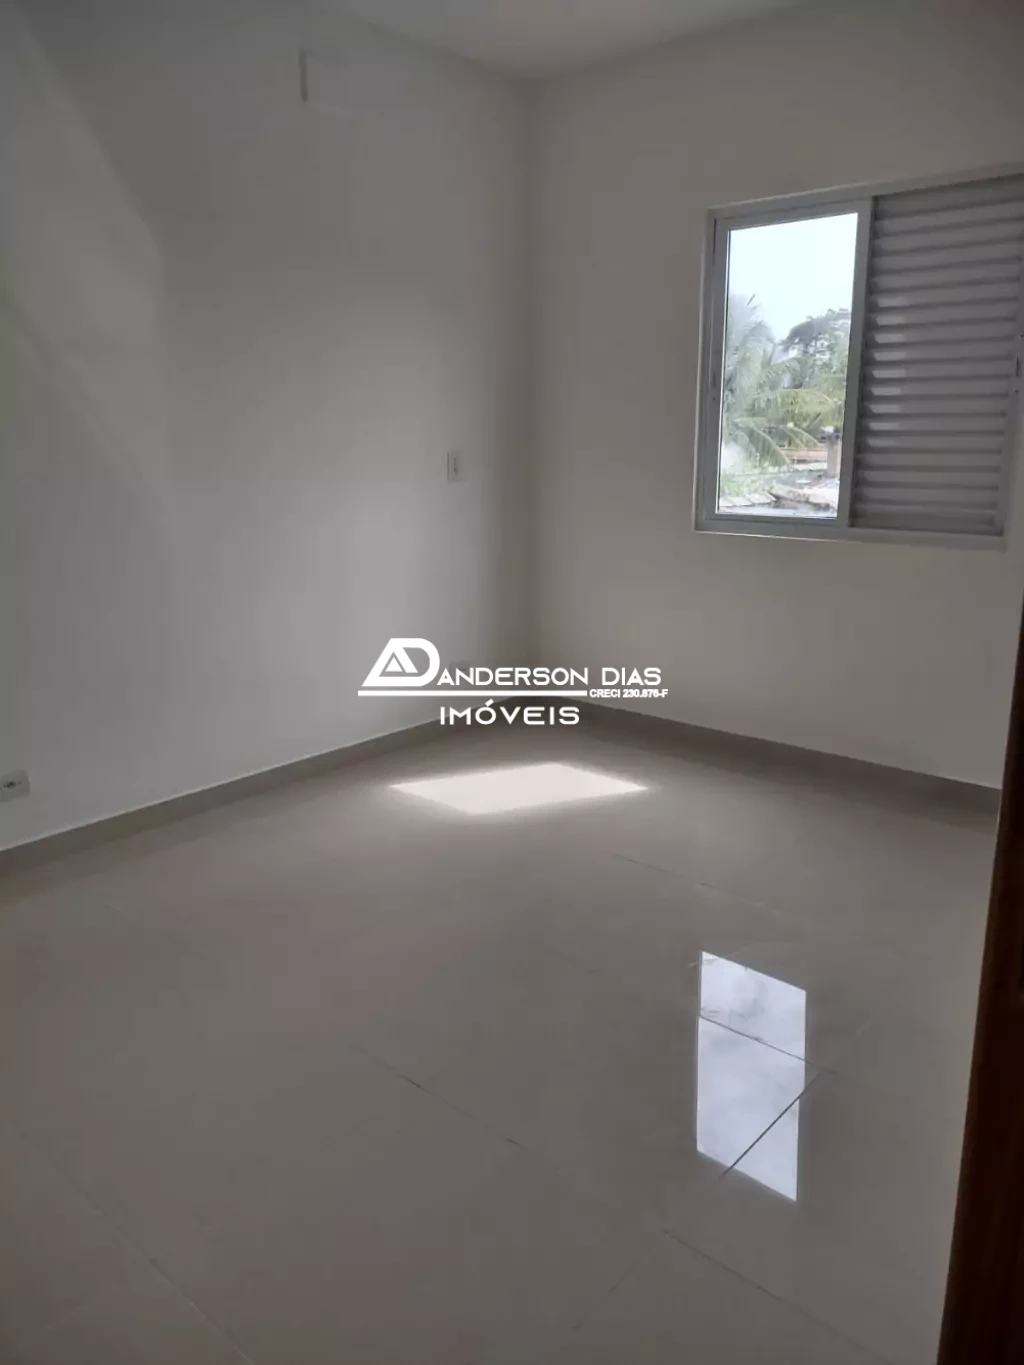 Apartamento para locação definitiva com 1 Dormitório, 62,00m² por R$ 1.400/Mês - Praia das Palmeiras - Caraguatatuba/SP